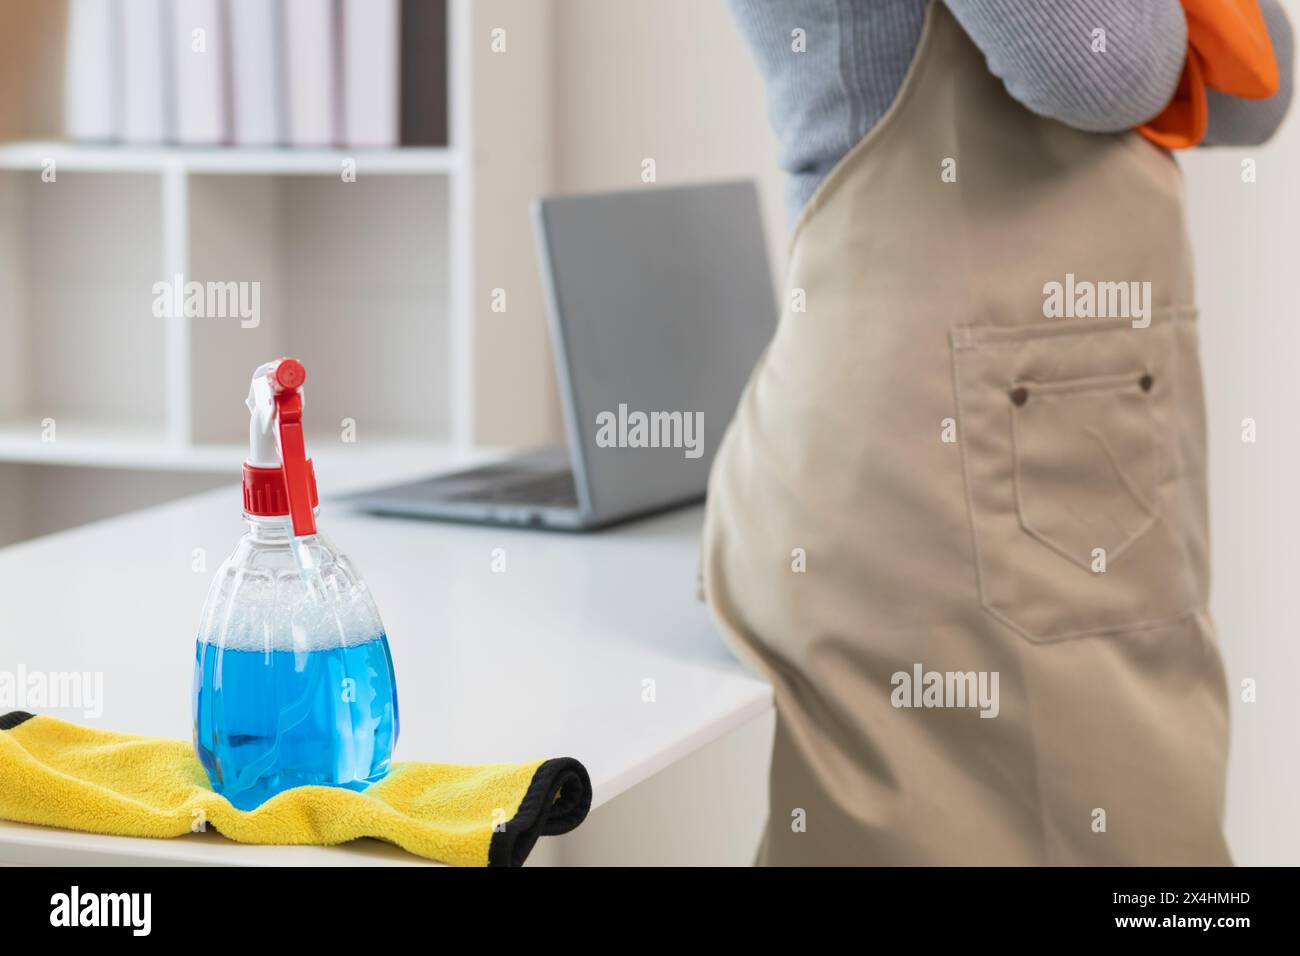 La soluzione detergente a base di disinfettante è preparata in un flacone spray per una facile spruzzatura per pulire gli interni degli uffici e le superfici dei mobili. Concetto di Foto Stock